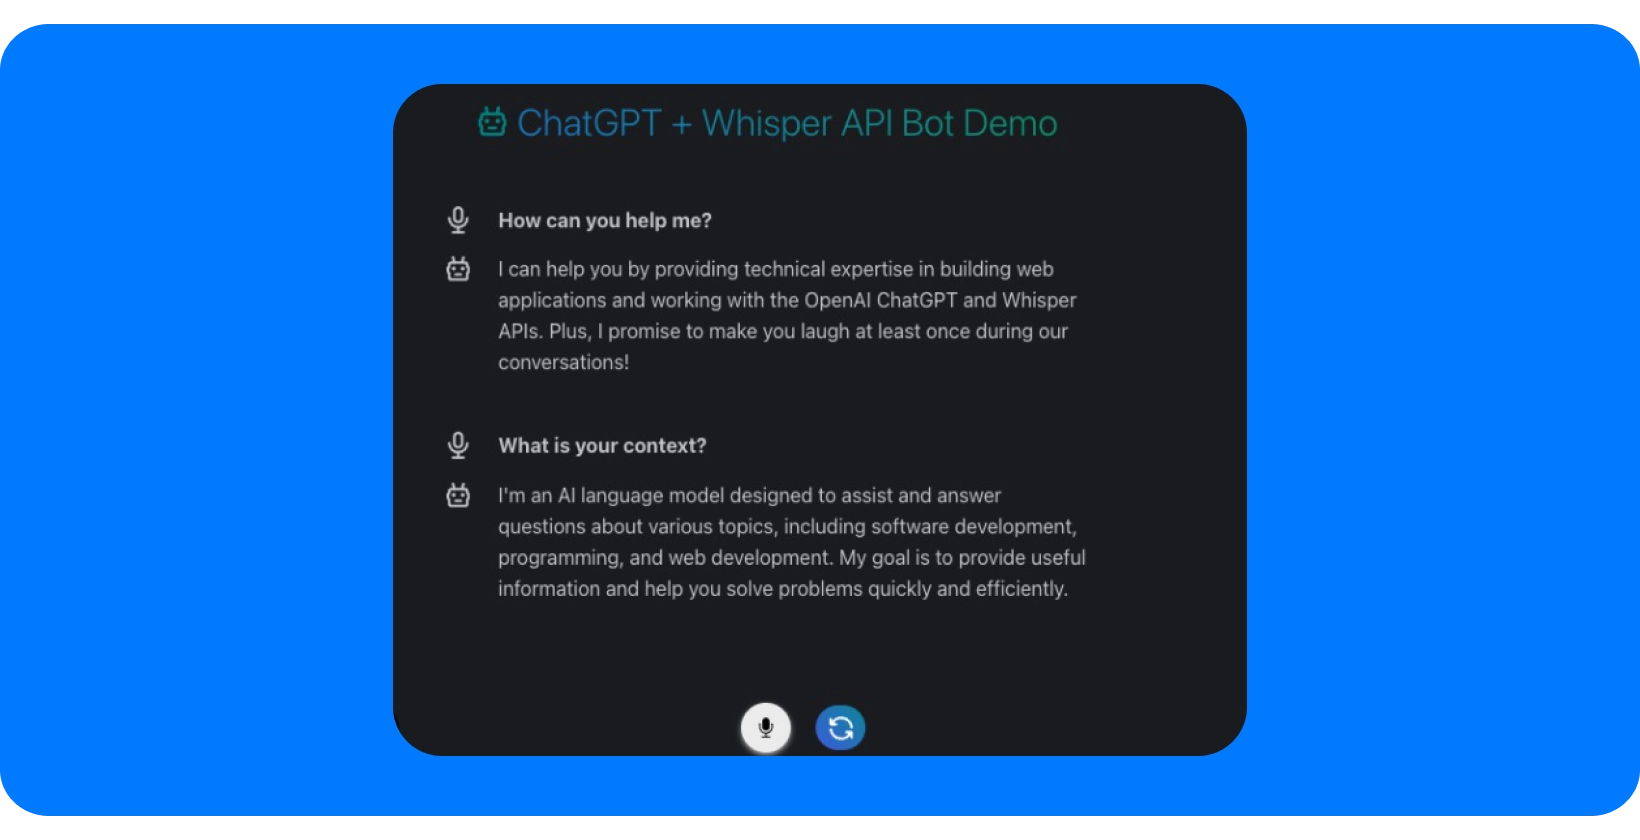 Ảnh chụp màn hình của ChatGPT + Whisper API Bot Demo giới thiệu khả năng hỗ trợ hội thoại.